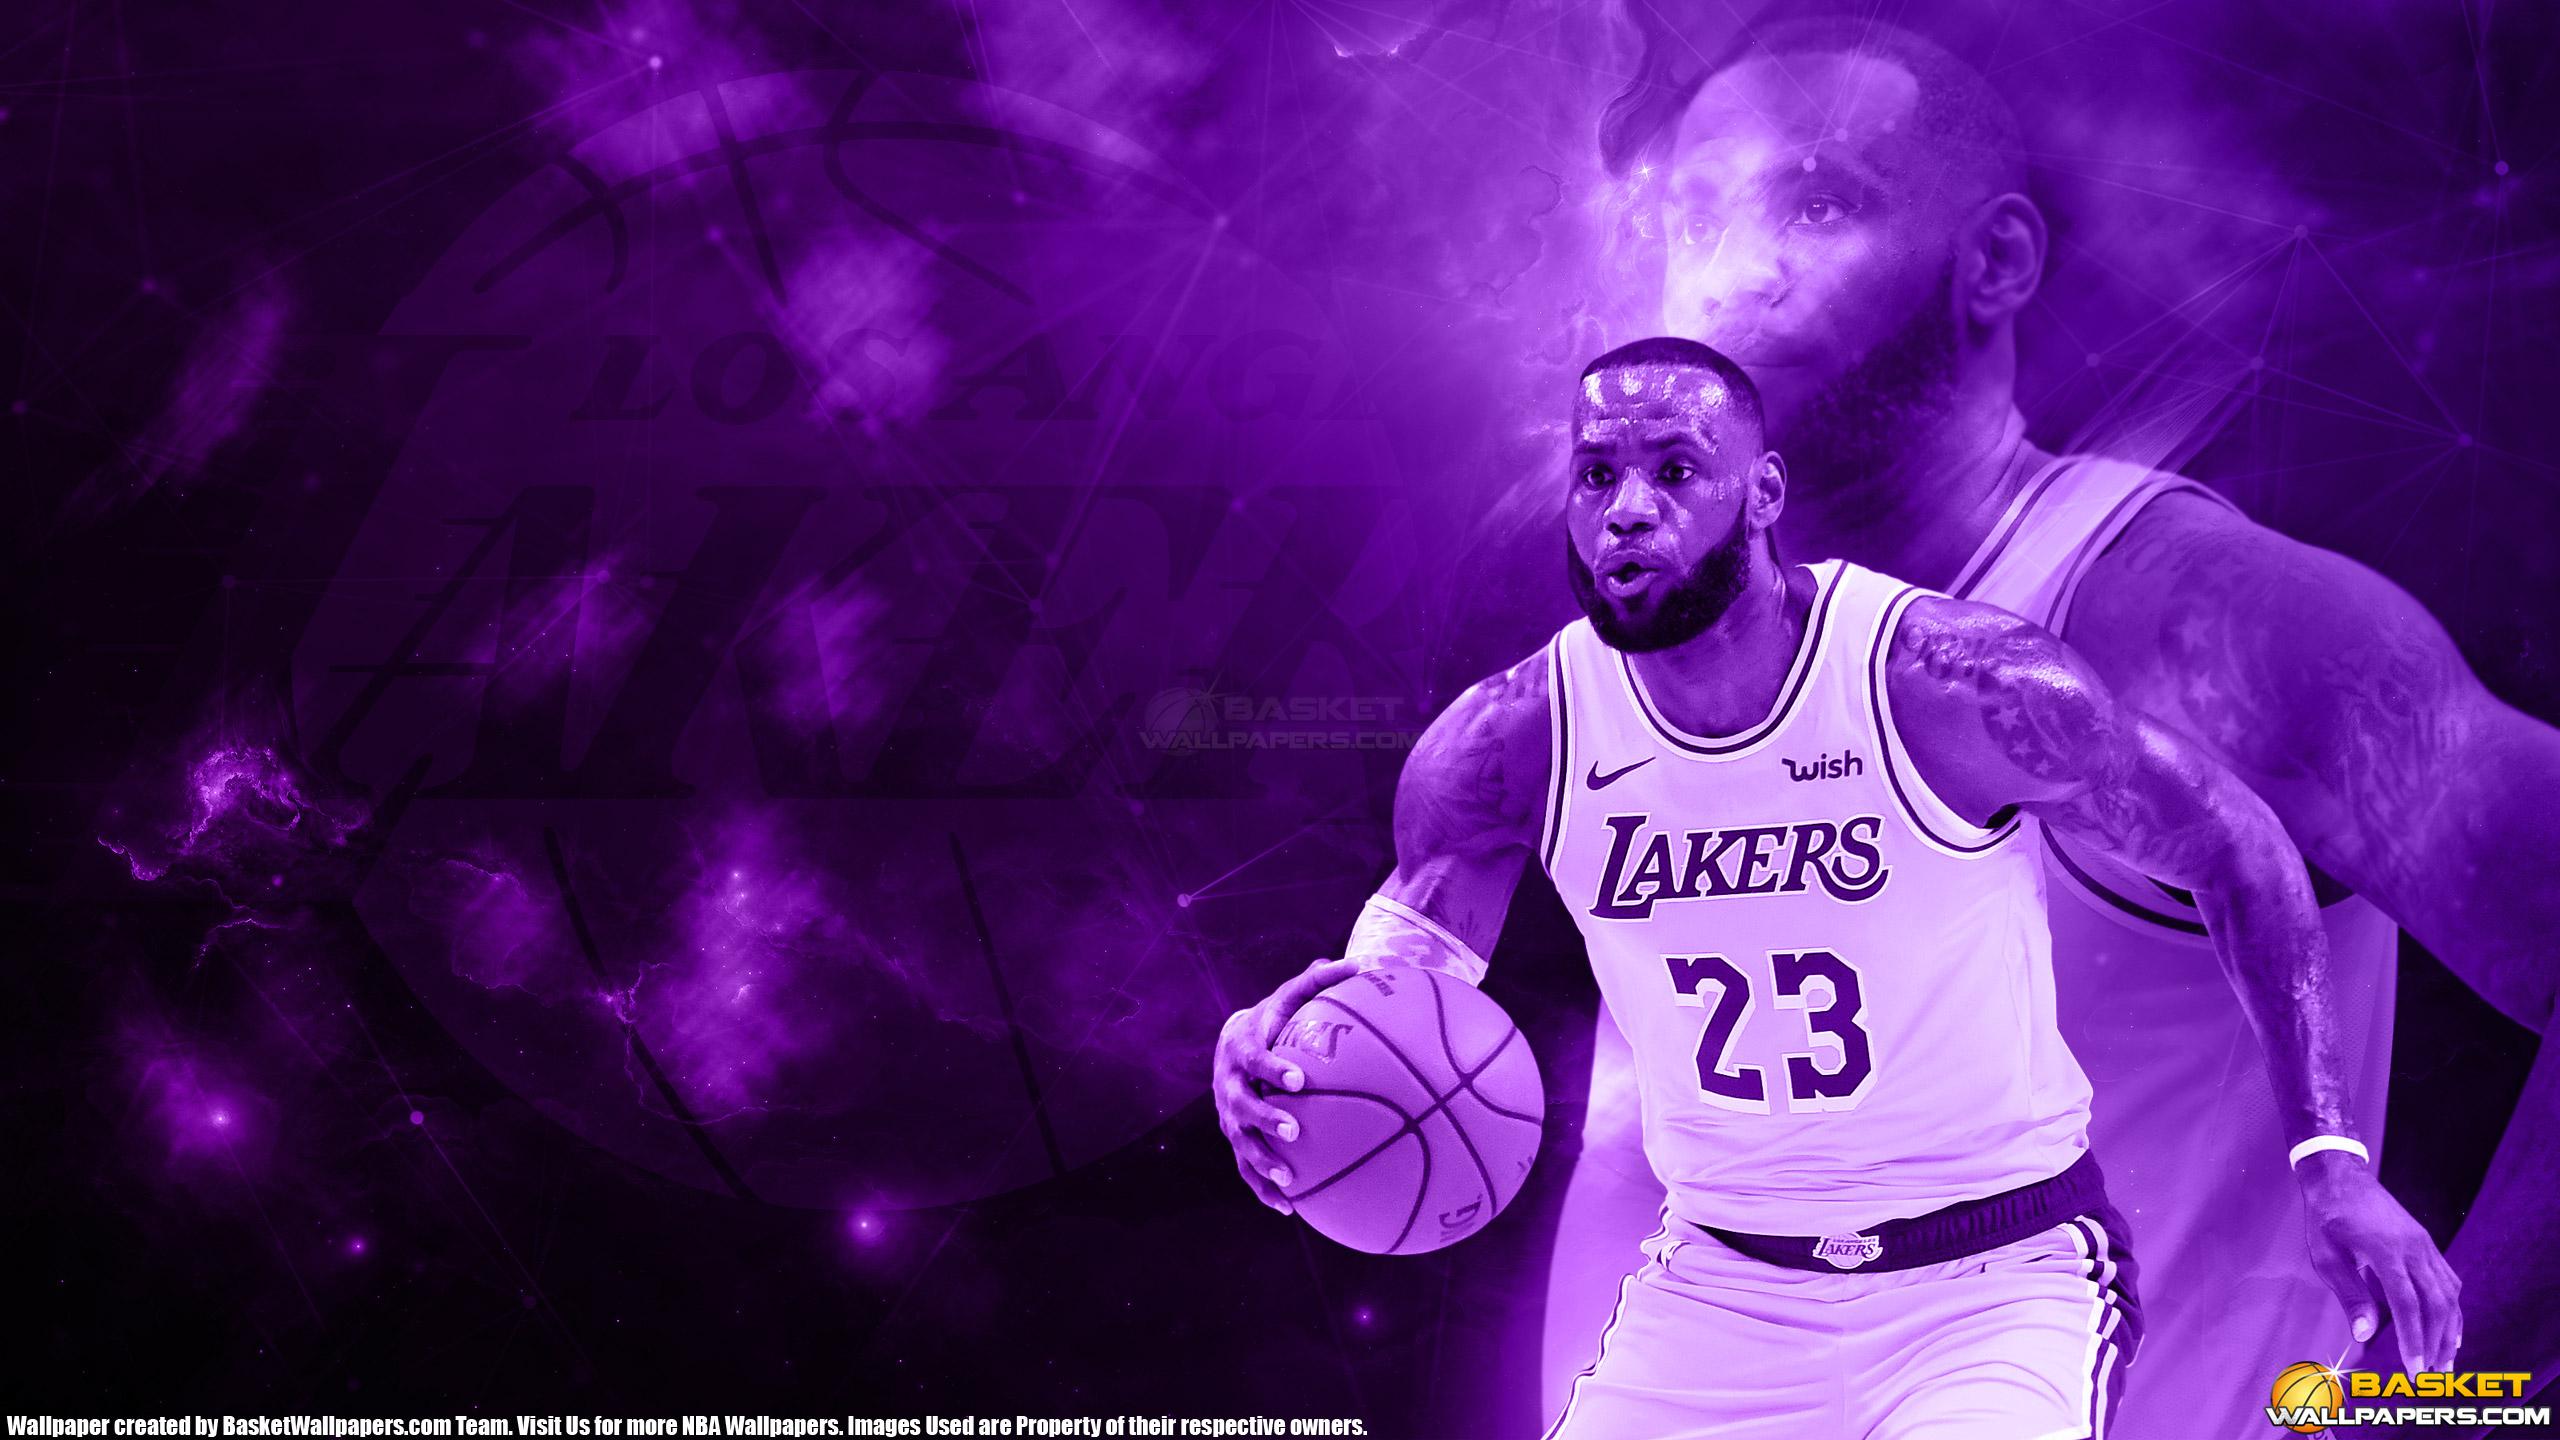 LeBron James 2019 LA Lakers 2560×1440 Wallpaper. Basketball